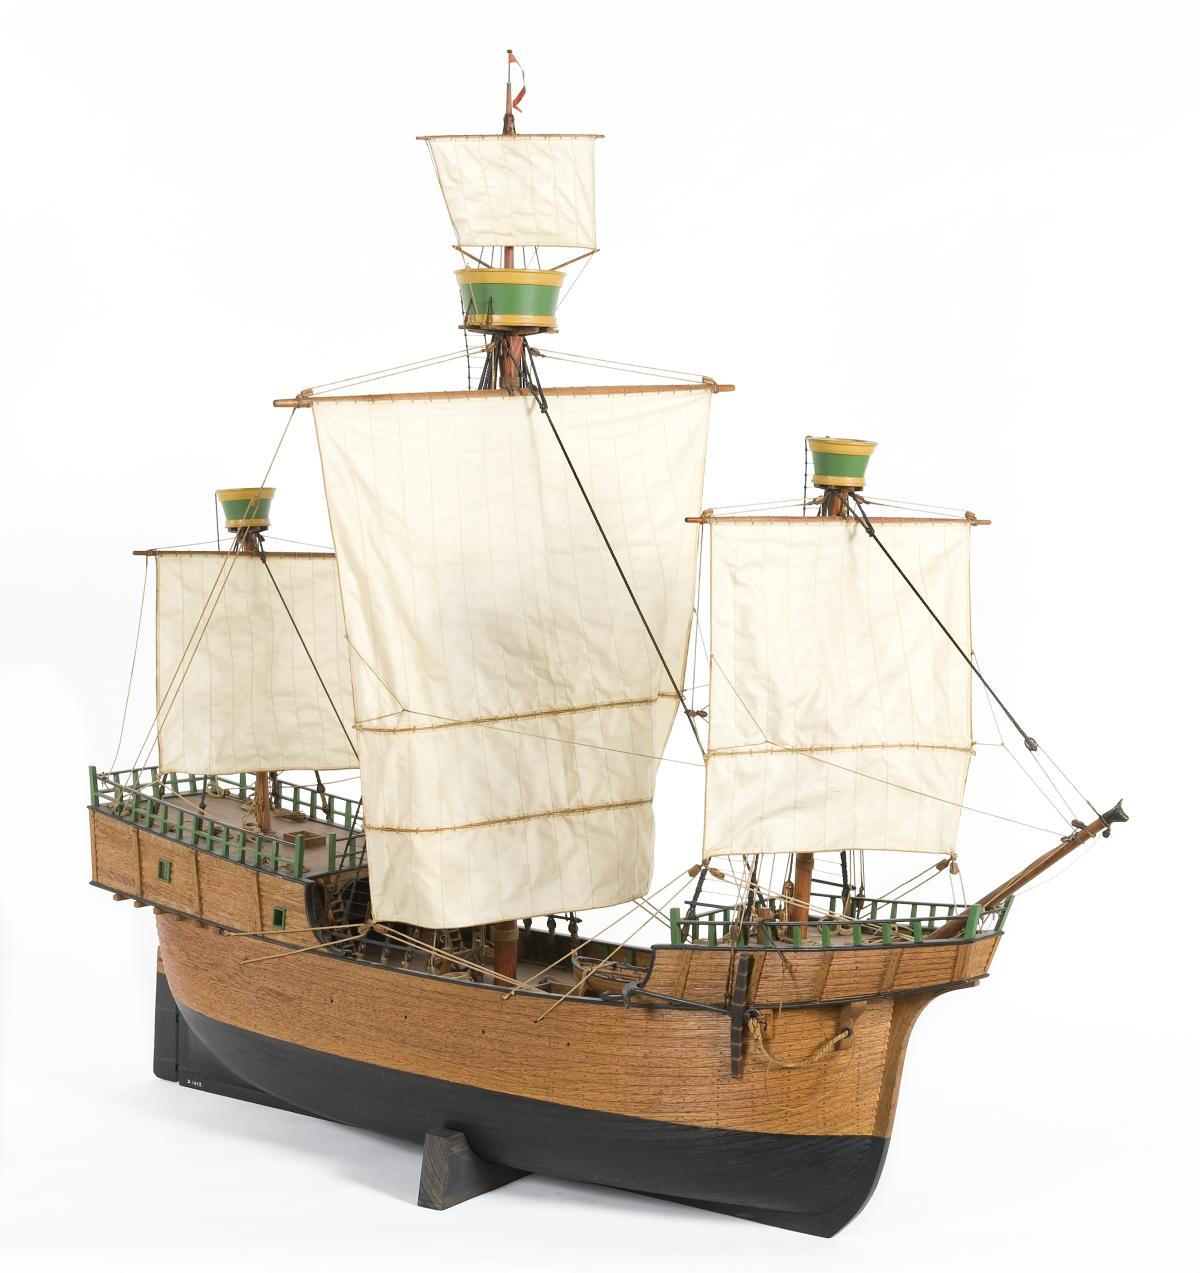 Holkki-tyyppinen laiva 1400-luvun puolivälistä. Alus oli koristelematon, tasasaumainen ja raakapurjetakiloitu. Purjeiden alareunoissa näkyvät bonettipurjeet, lisäpurjeet, joita käytettiin myötätuulella.  Kuvaaja: Sjöhistoriska museet, Tukholma